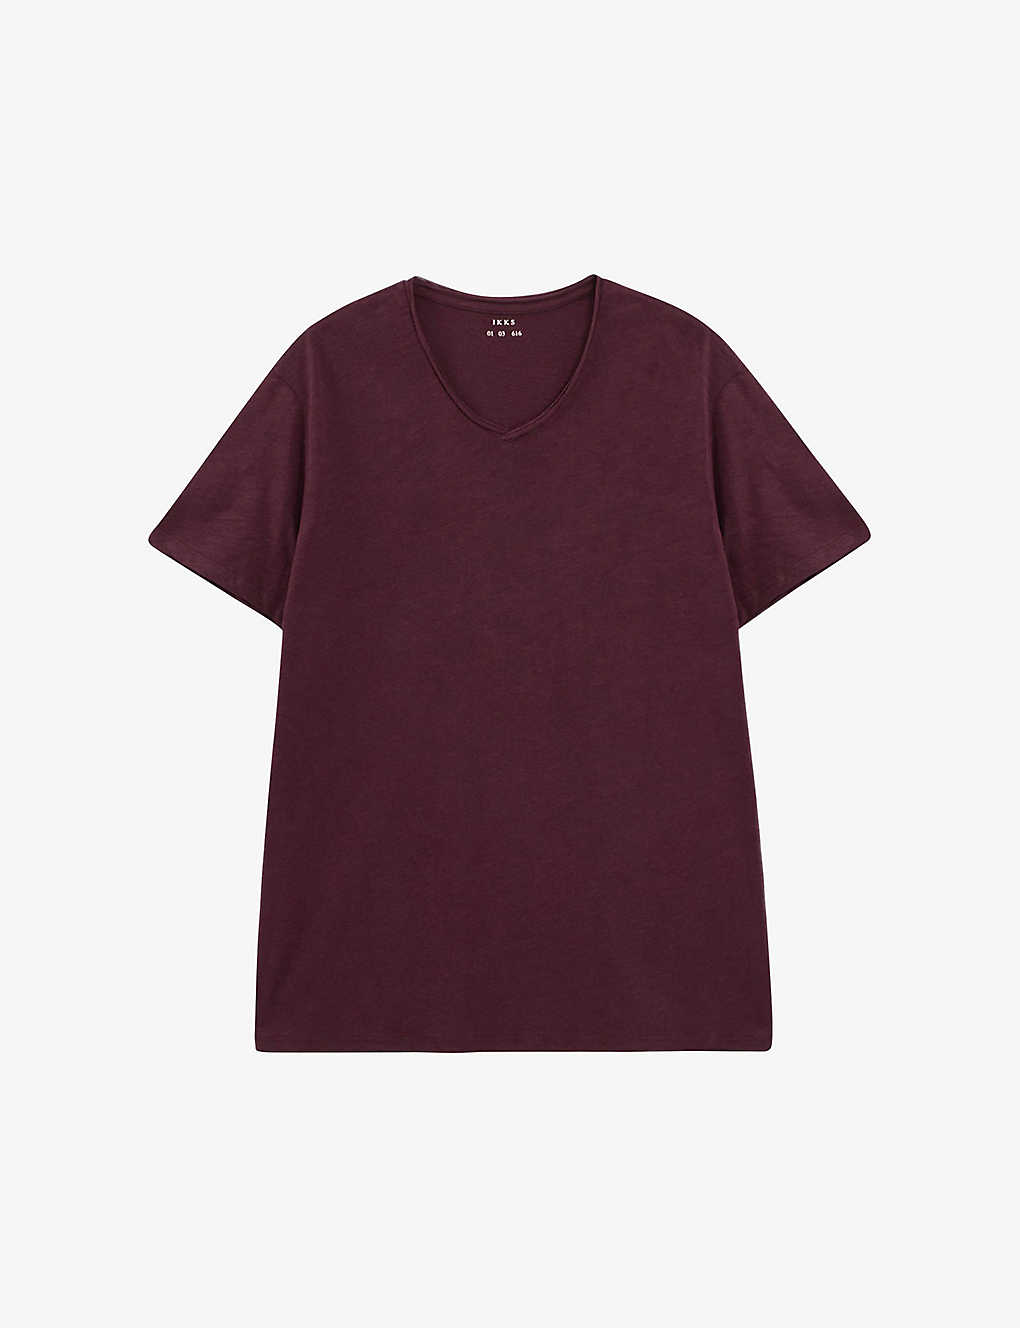 Ikks Mens Burgundy V-neck Short-sleeve Cotton T-shirt